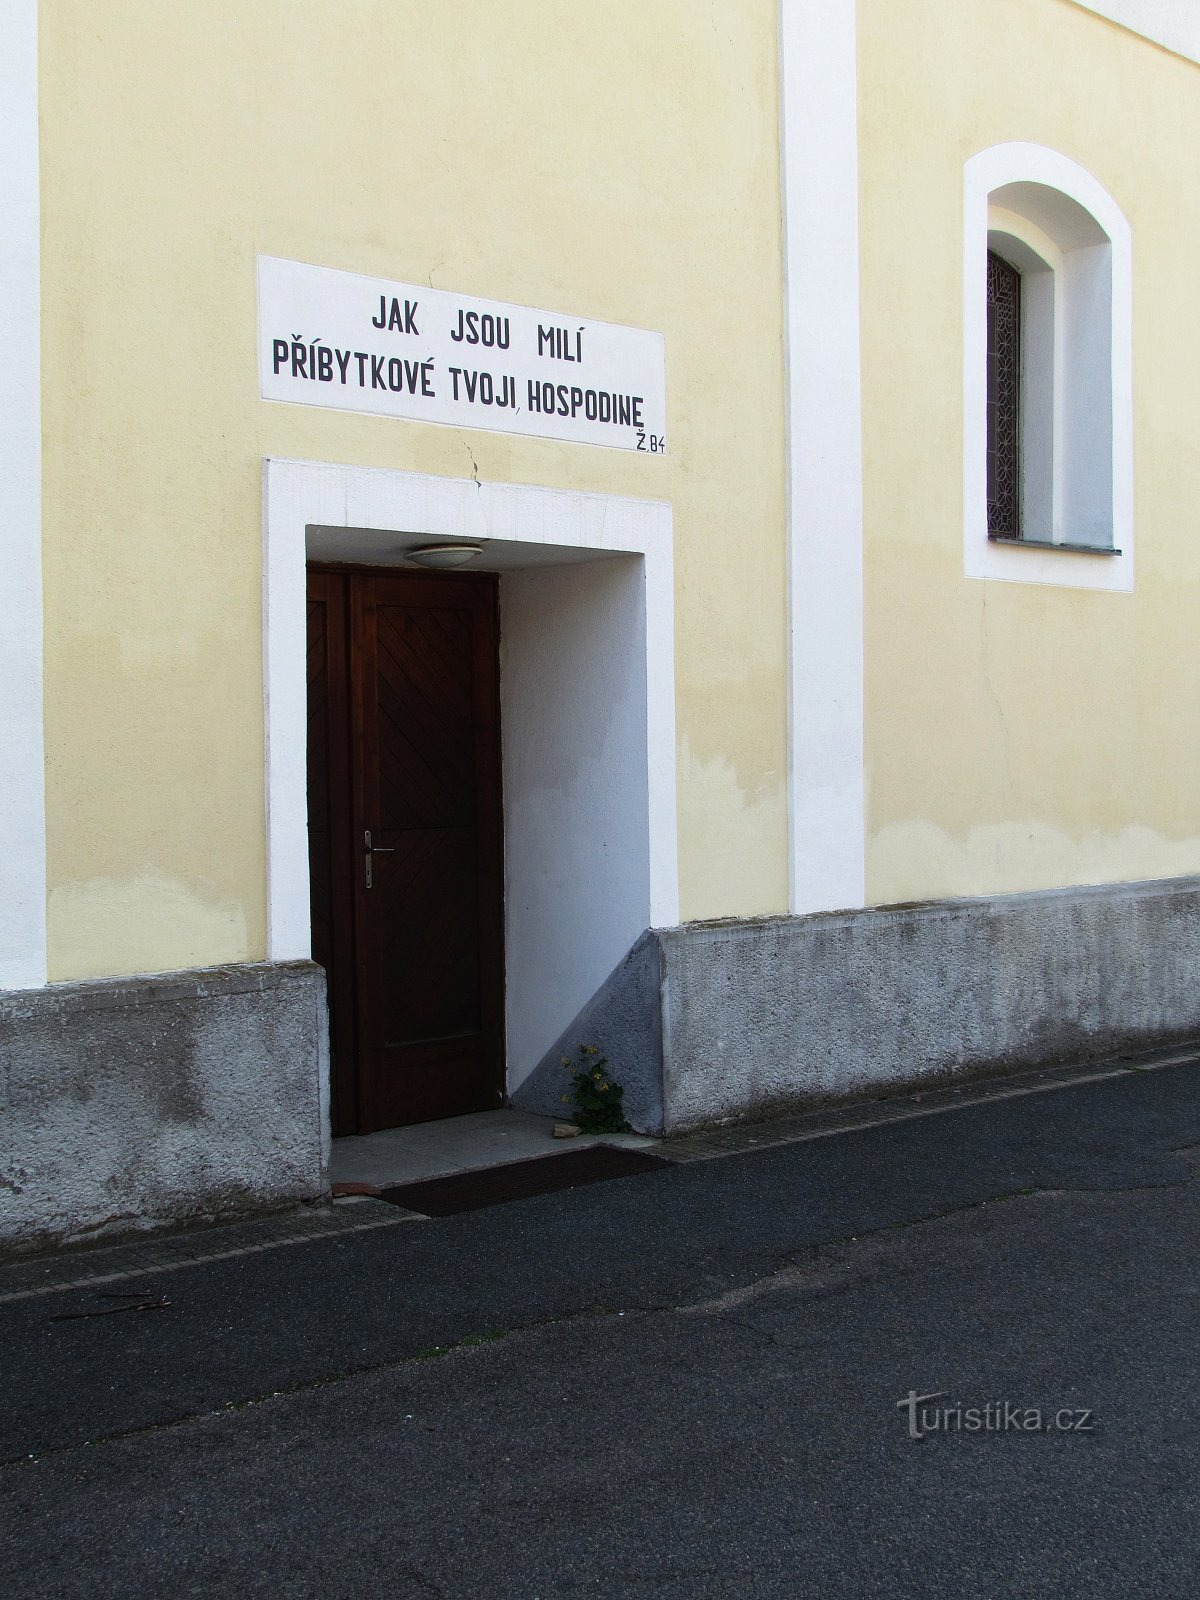 Javorník - evangelische Kirche